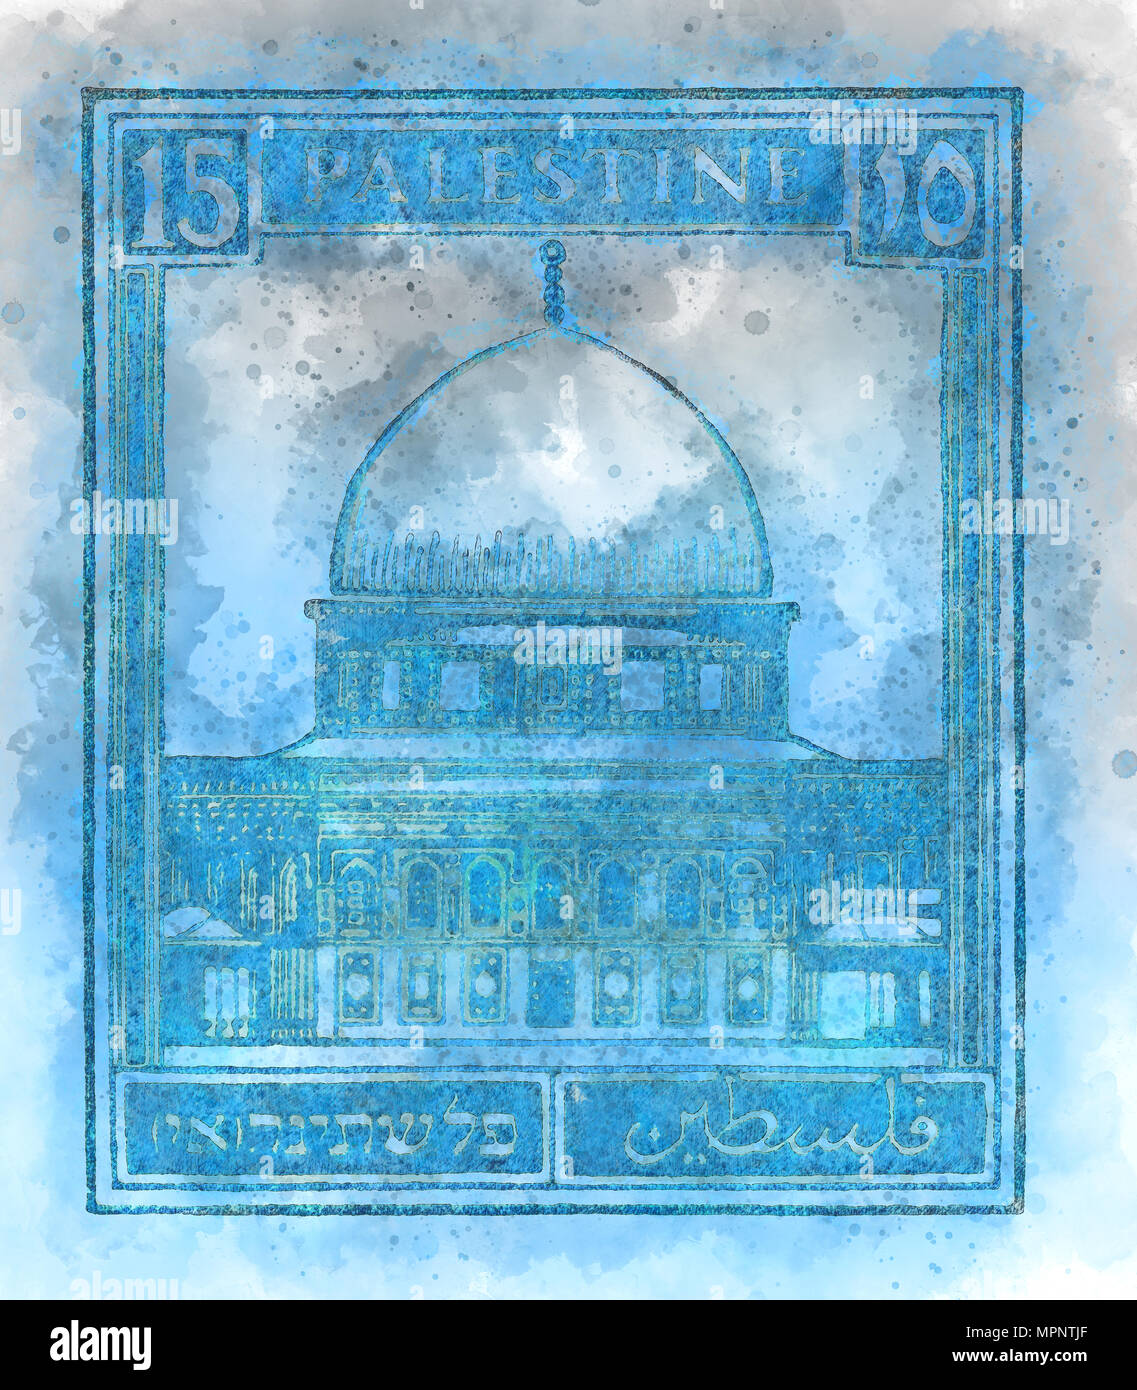 Amélioration de l'image numérique d'une Palestine sous mandat britannique (pré) 1948 stamp. Dôme du rocher bleu Banque D'Images